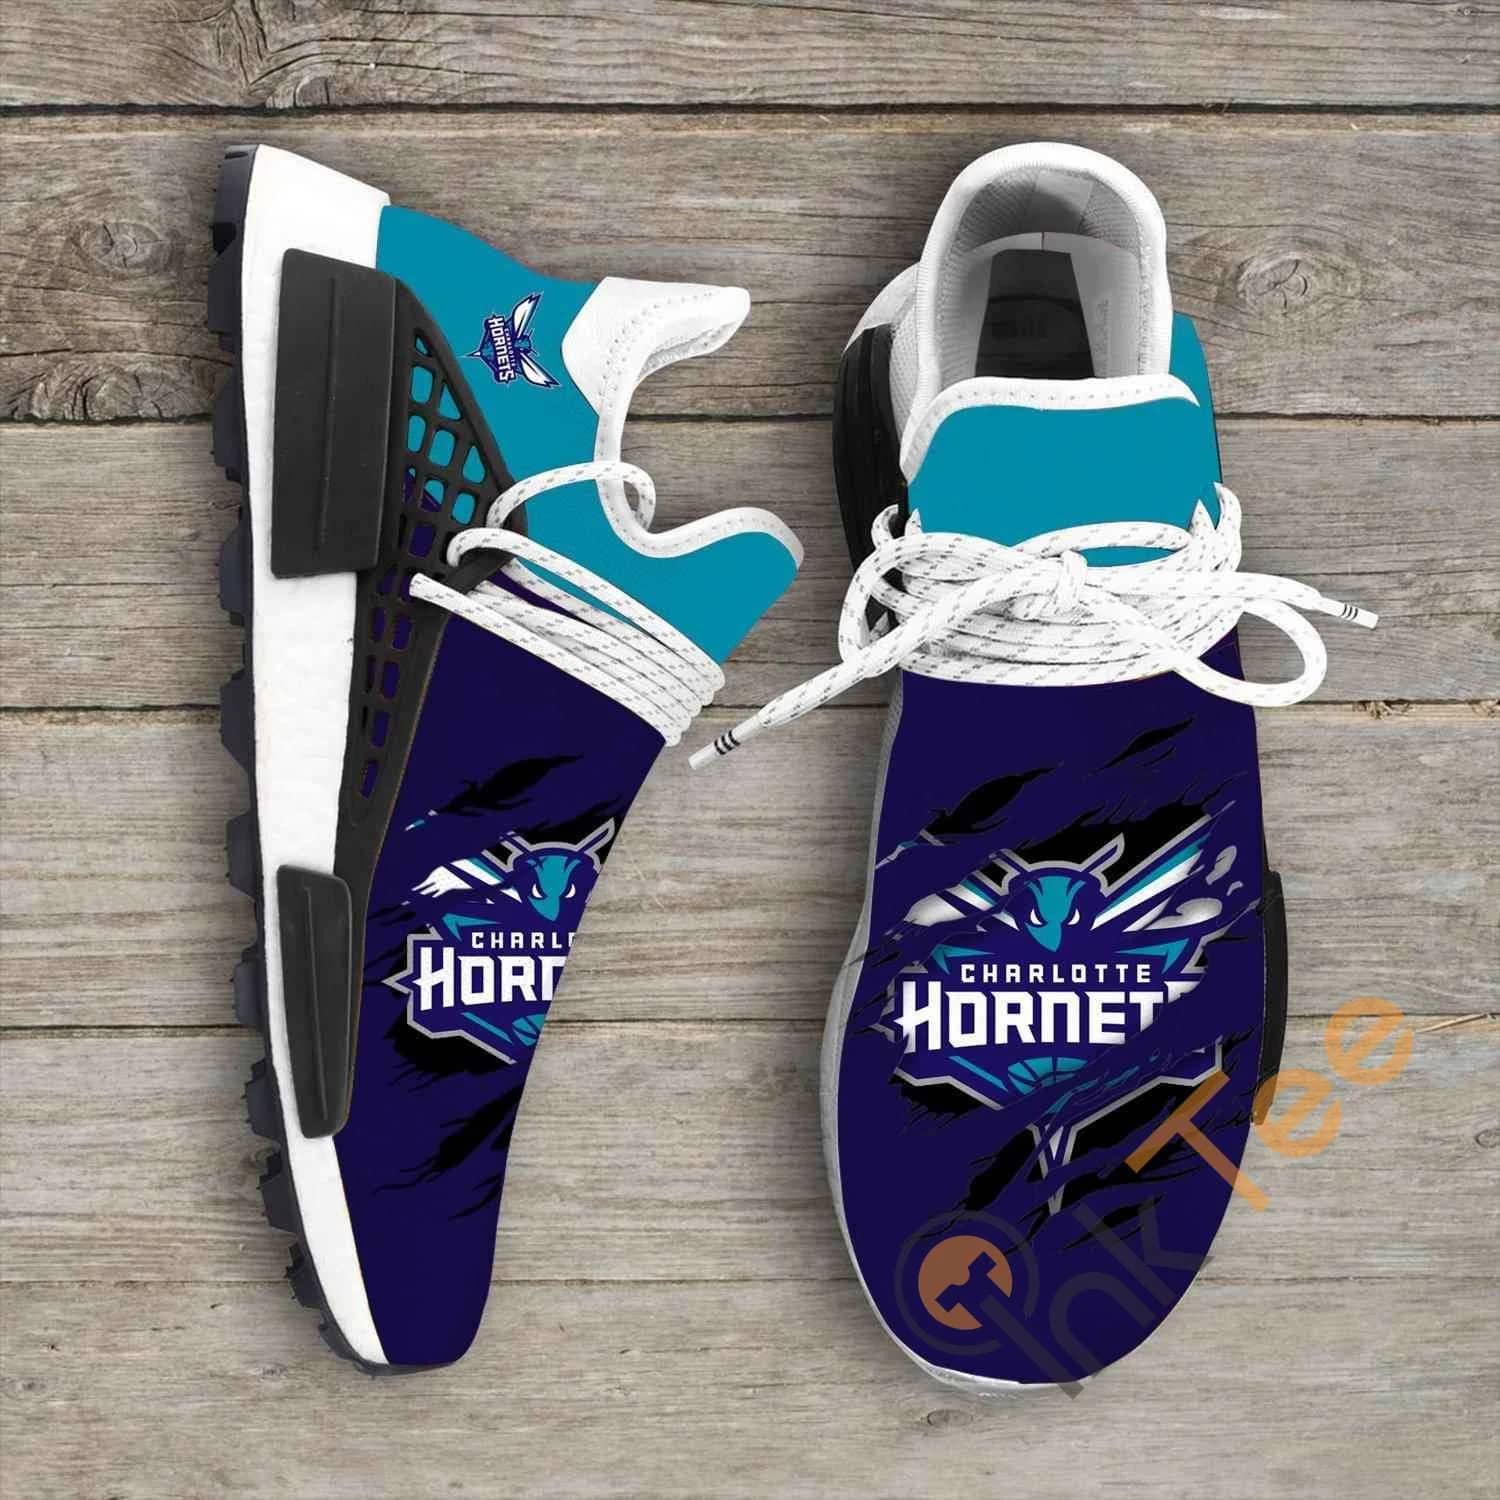 Charlotte Hornets Nba Ha02 Nmd Human Shoes